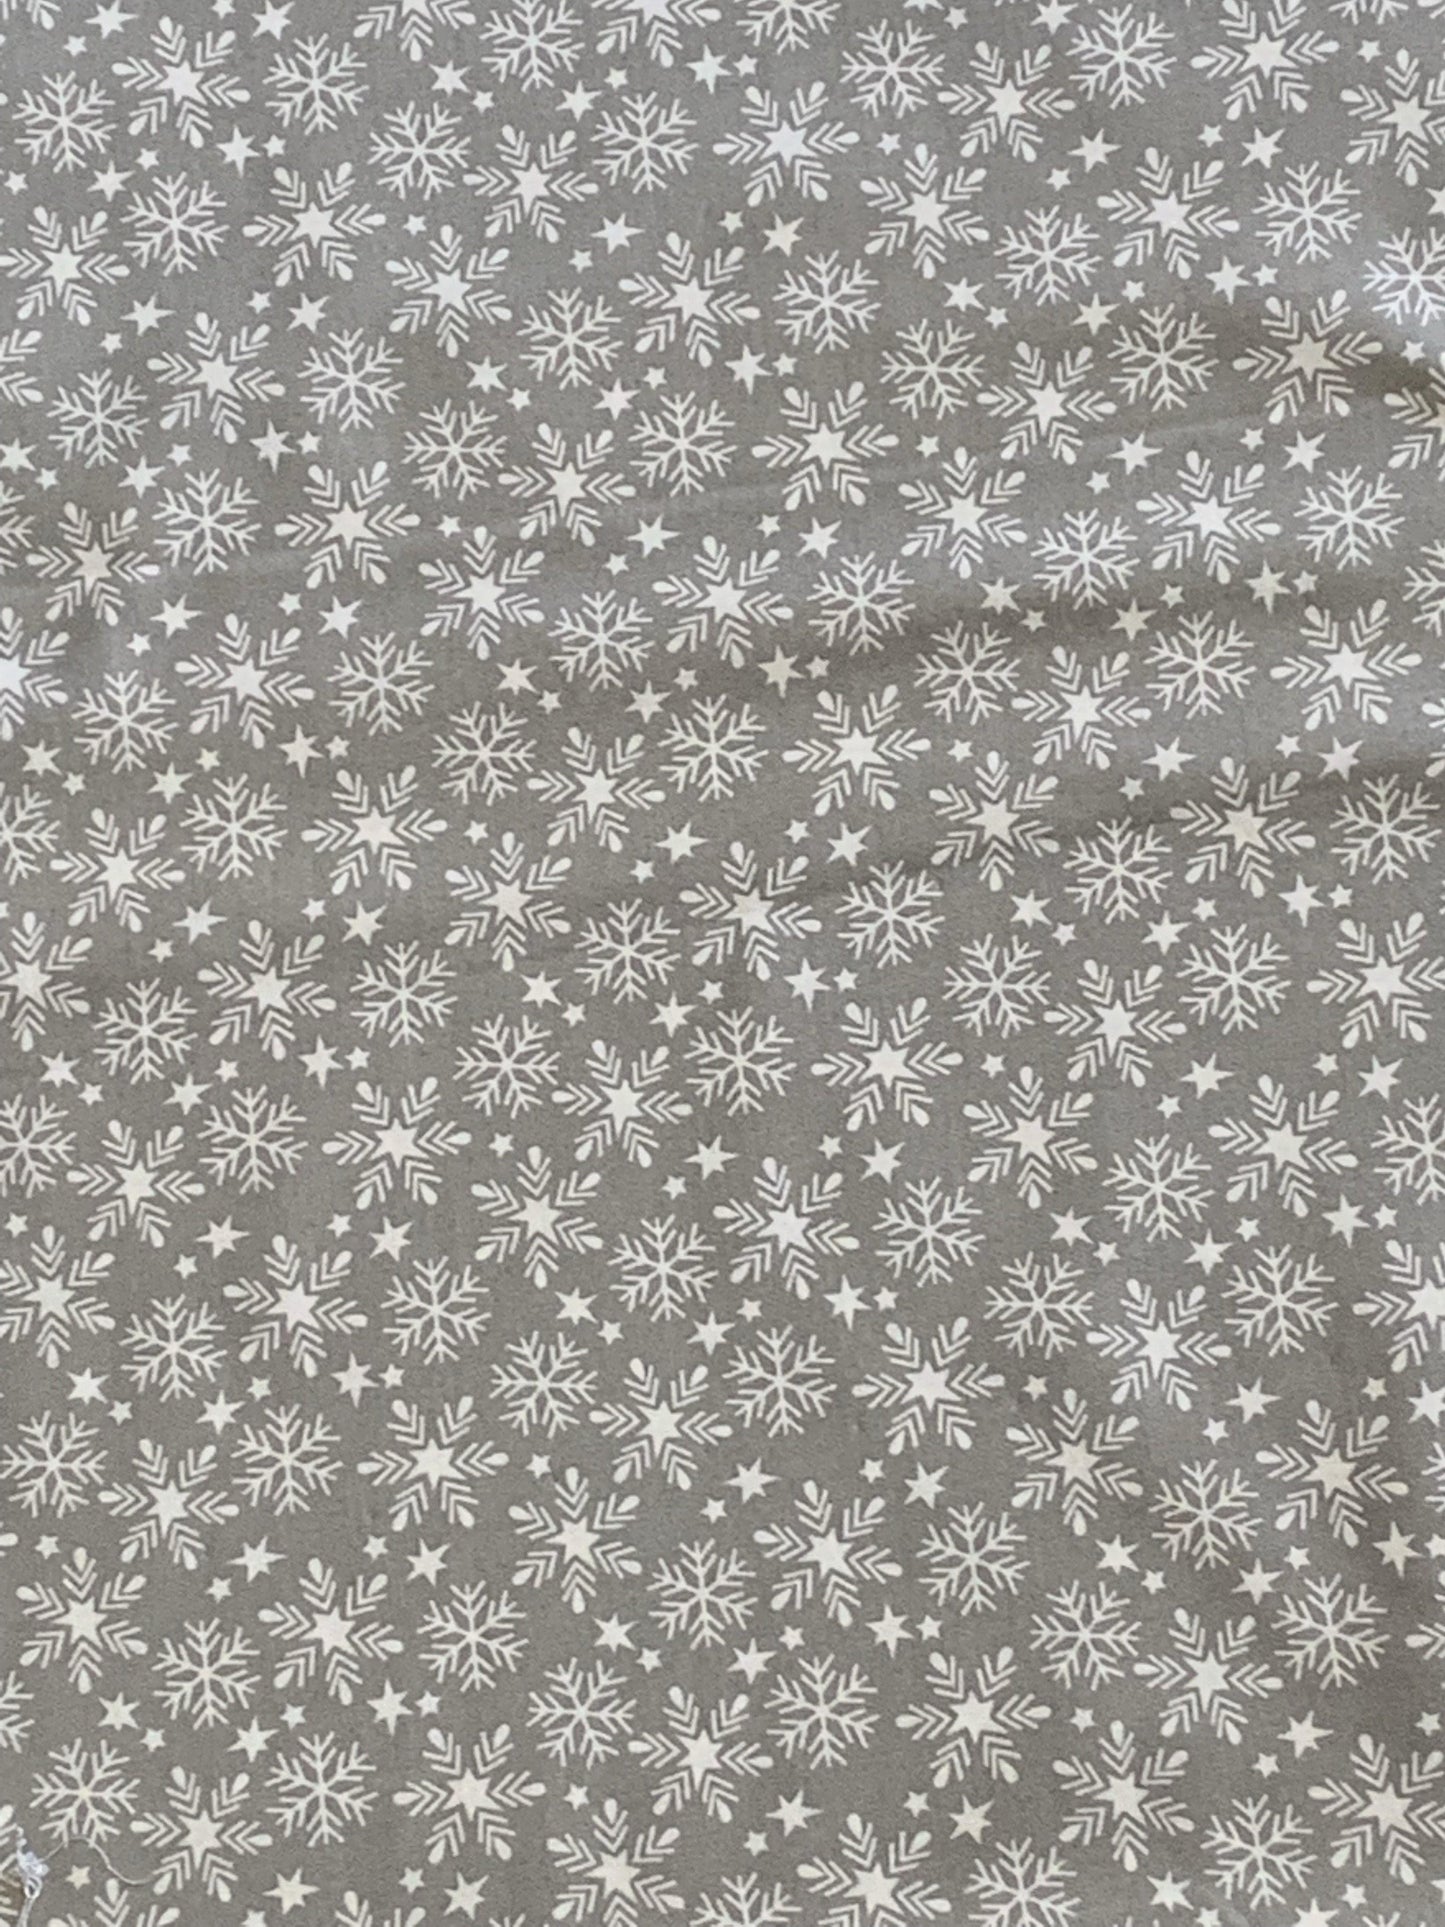 Snowfall from Fa La La by Maude Asbury and Free Spirit Fabrics PWMA016.XGREY - Sew Much